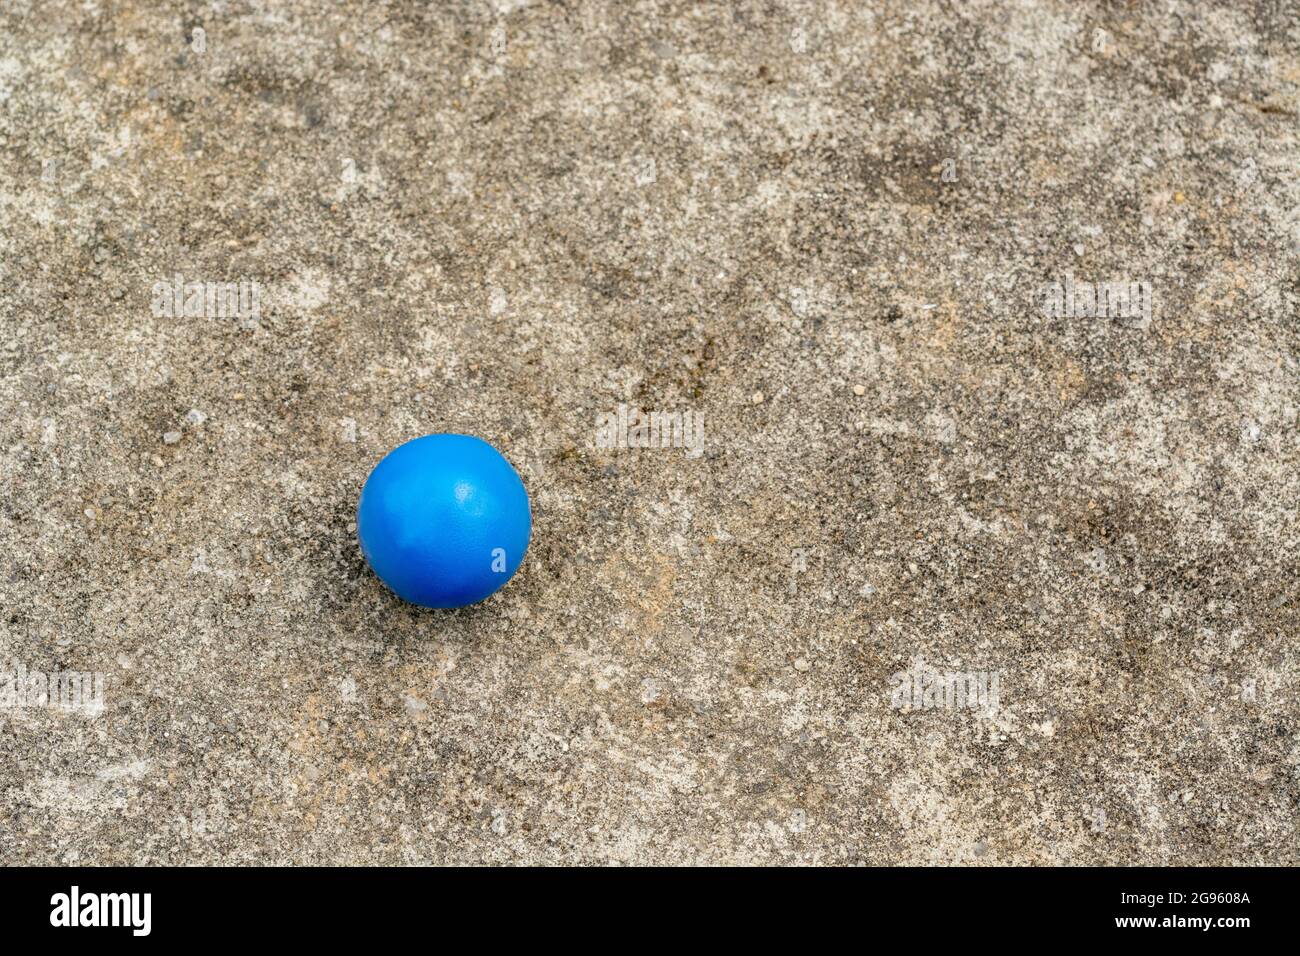 Sphère en plastique bleu sur la surface de ciment abîmé + espace de copie. Pour « tout seul », isolement, singulier, boule bleue, balle dans votre cour, solitude abstraite Banque D'Images